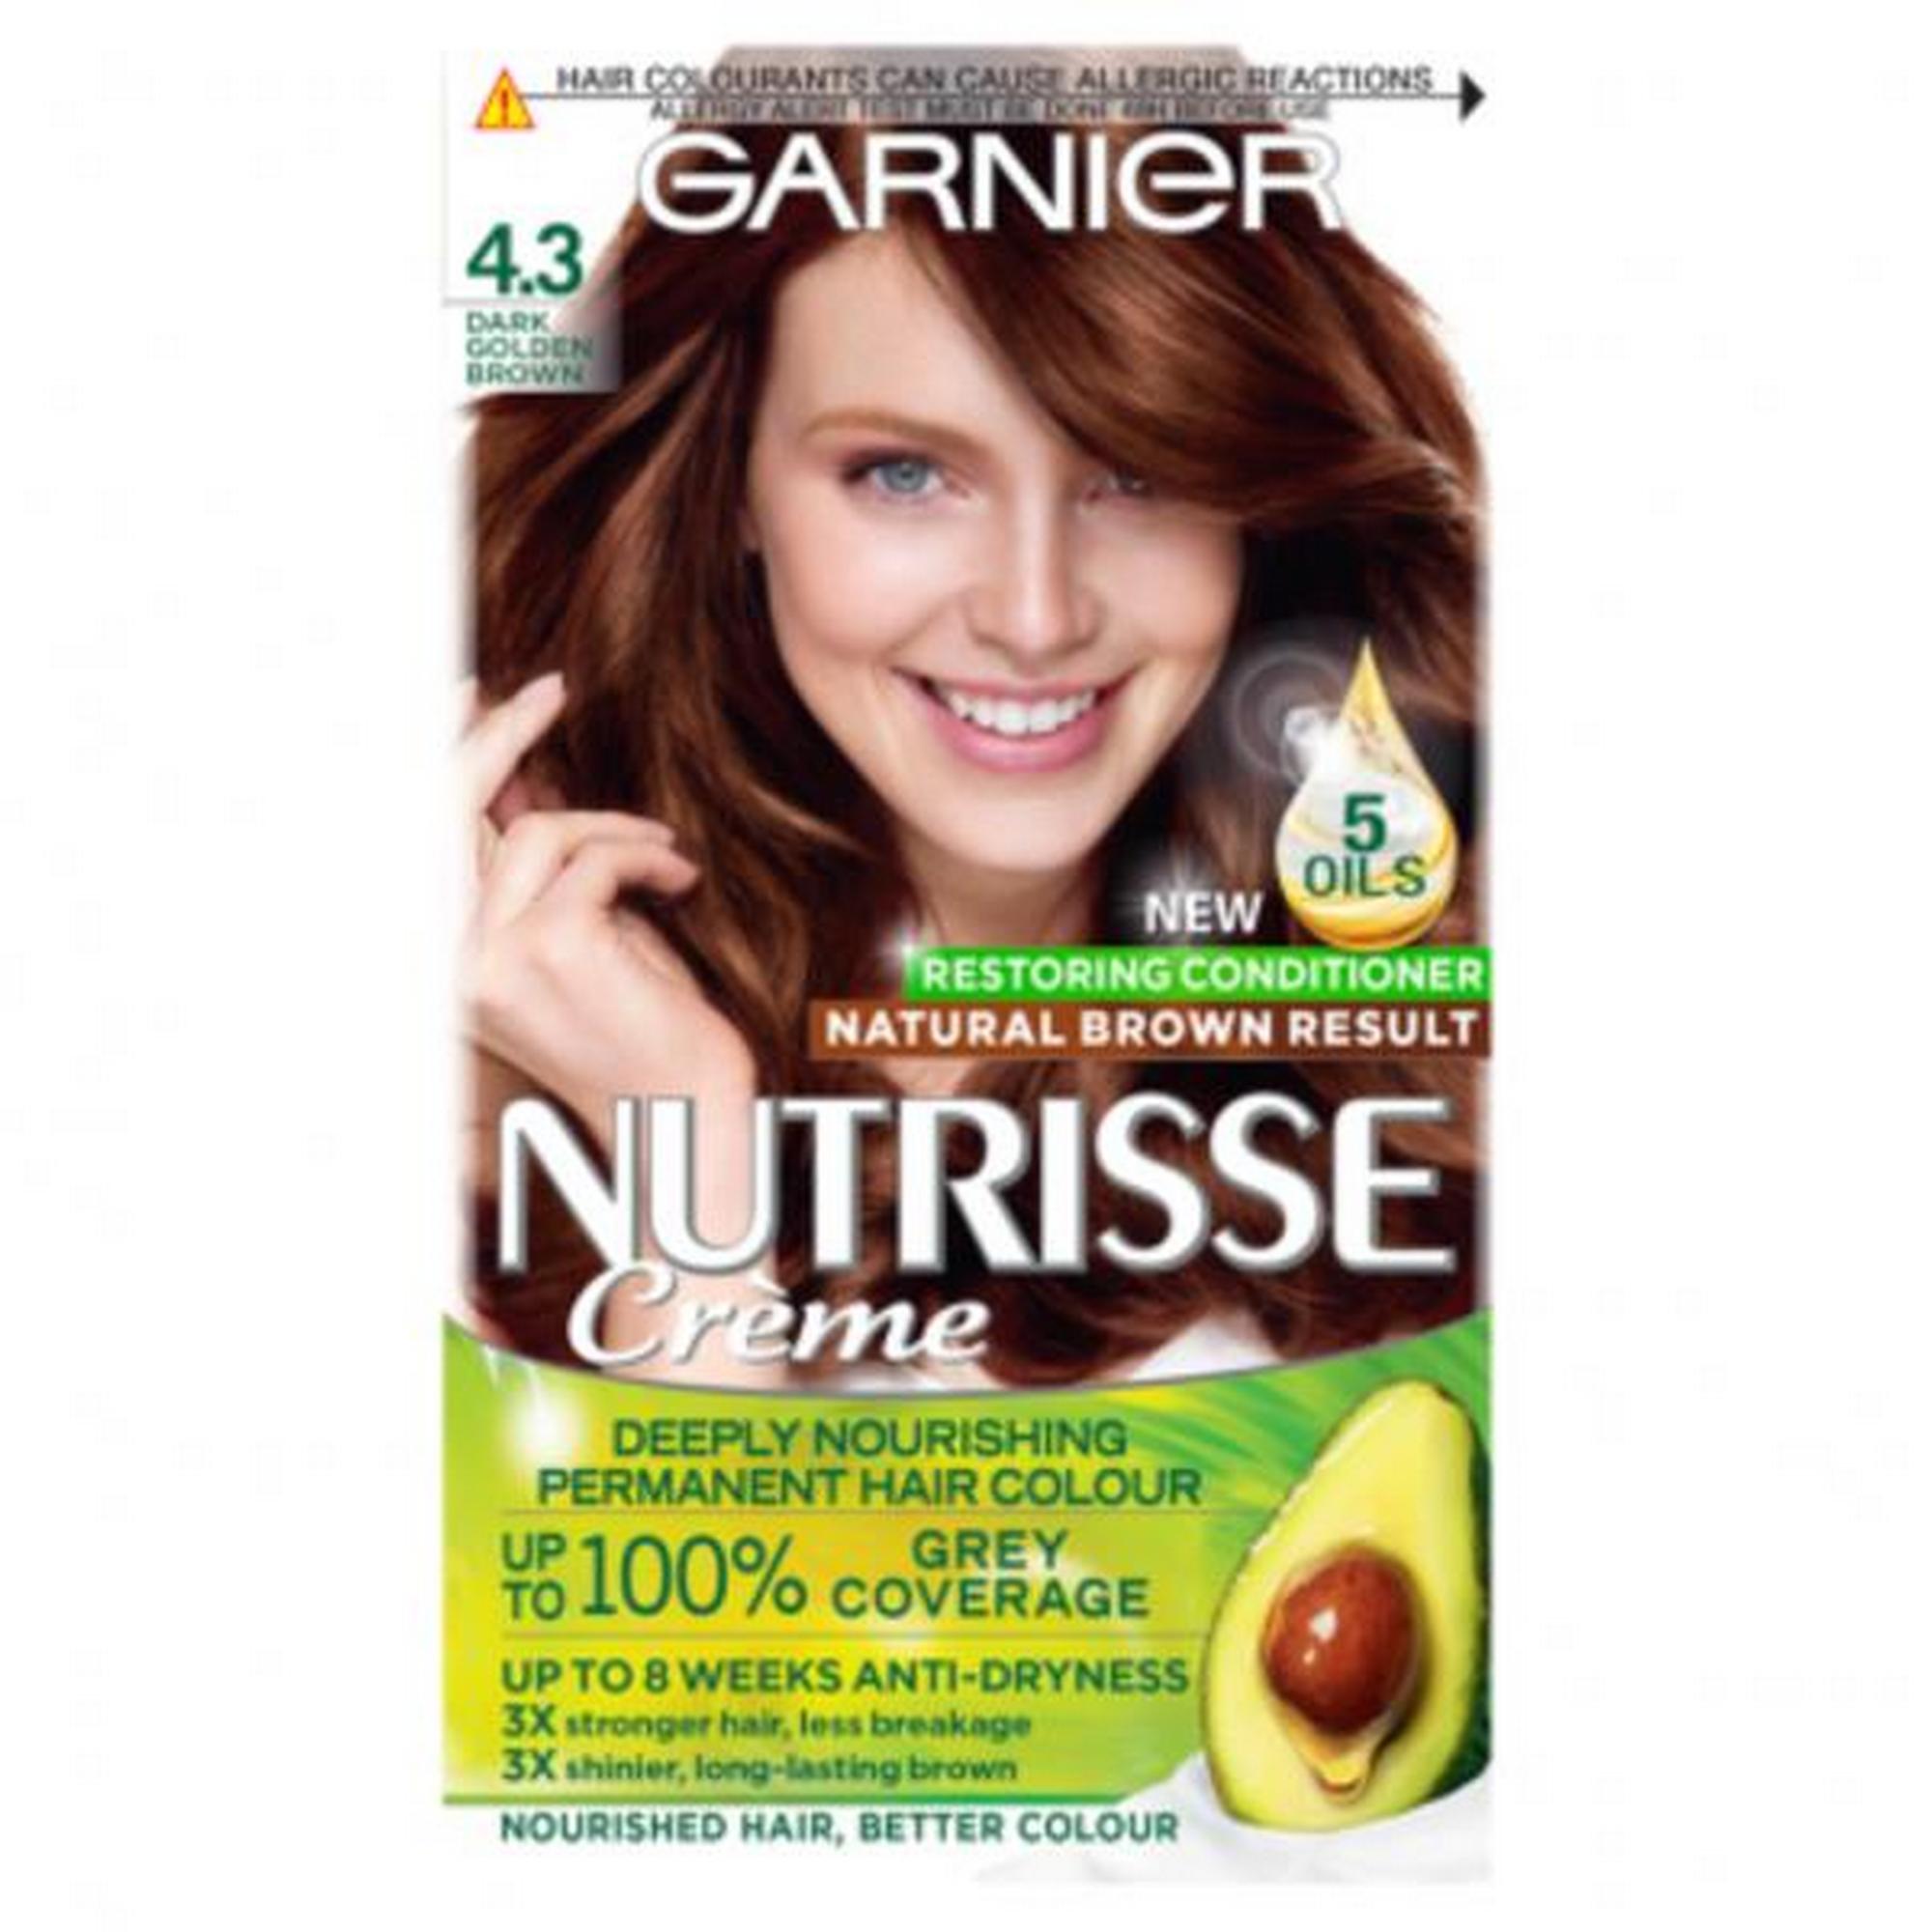 Garnier Nutrisse Ultra Crème Permanent Hair Dye Dark Golden Brown